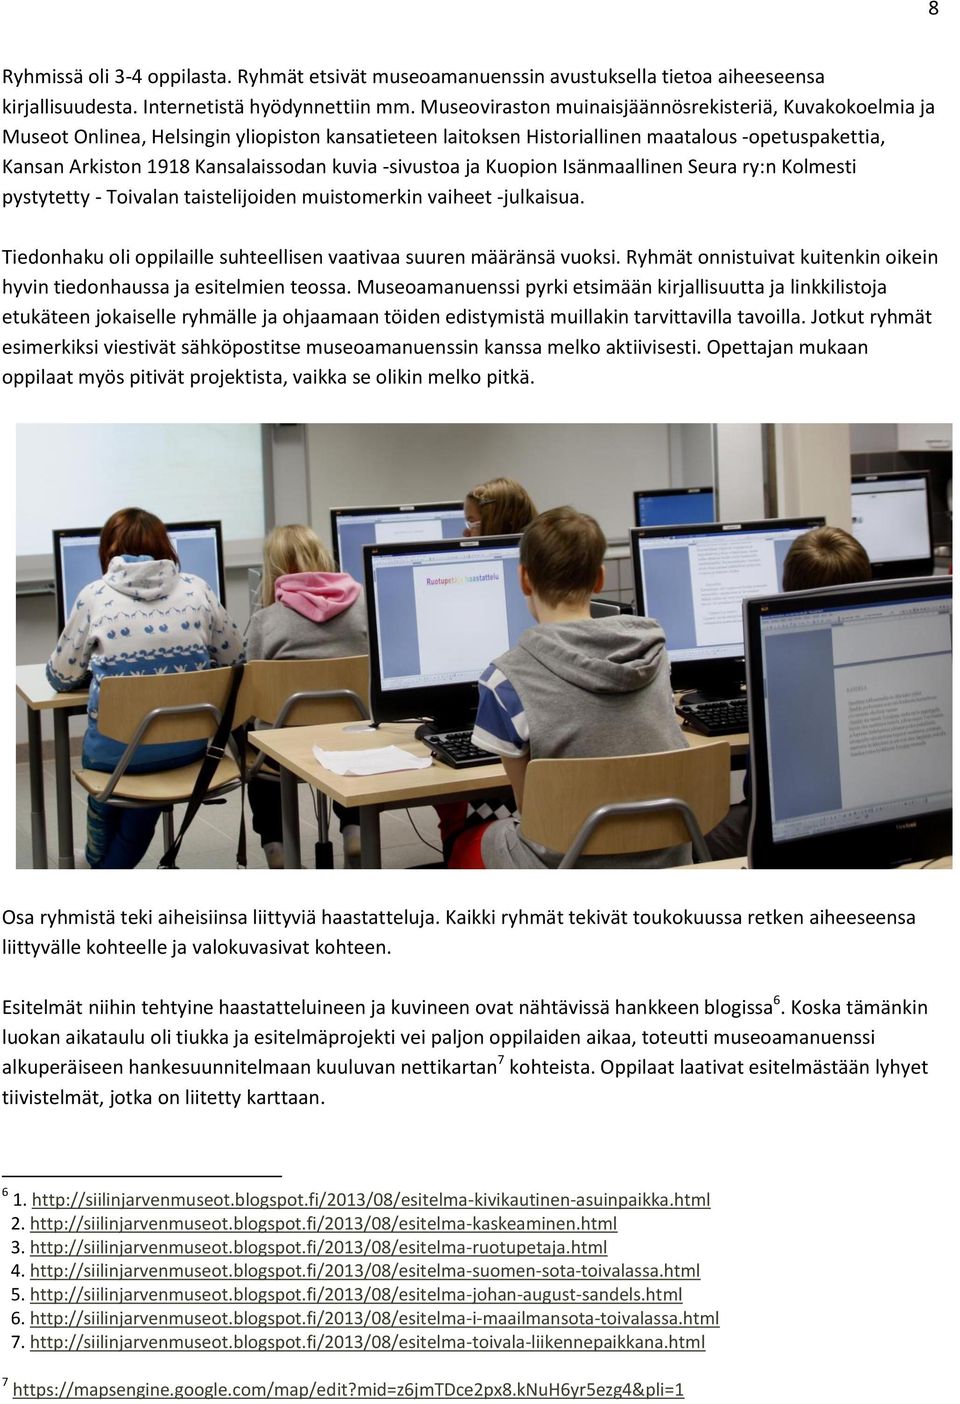 kuvia -sivustoa ja Kuopion Isänmaallinen Seura ry:n Kolmesti pystytetty - Toivalan taistelijoiden muistomerkin vaiheet -julkaisua.